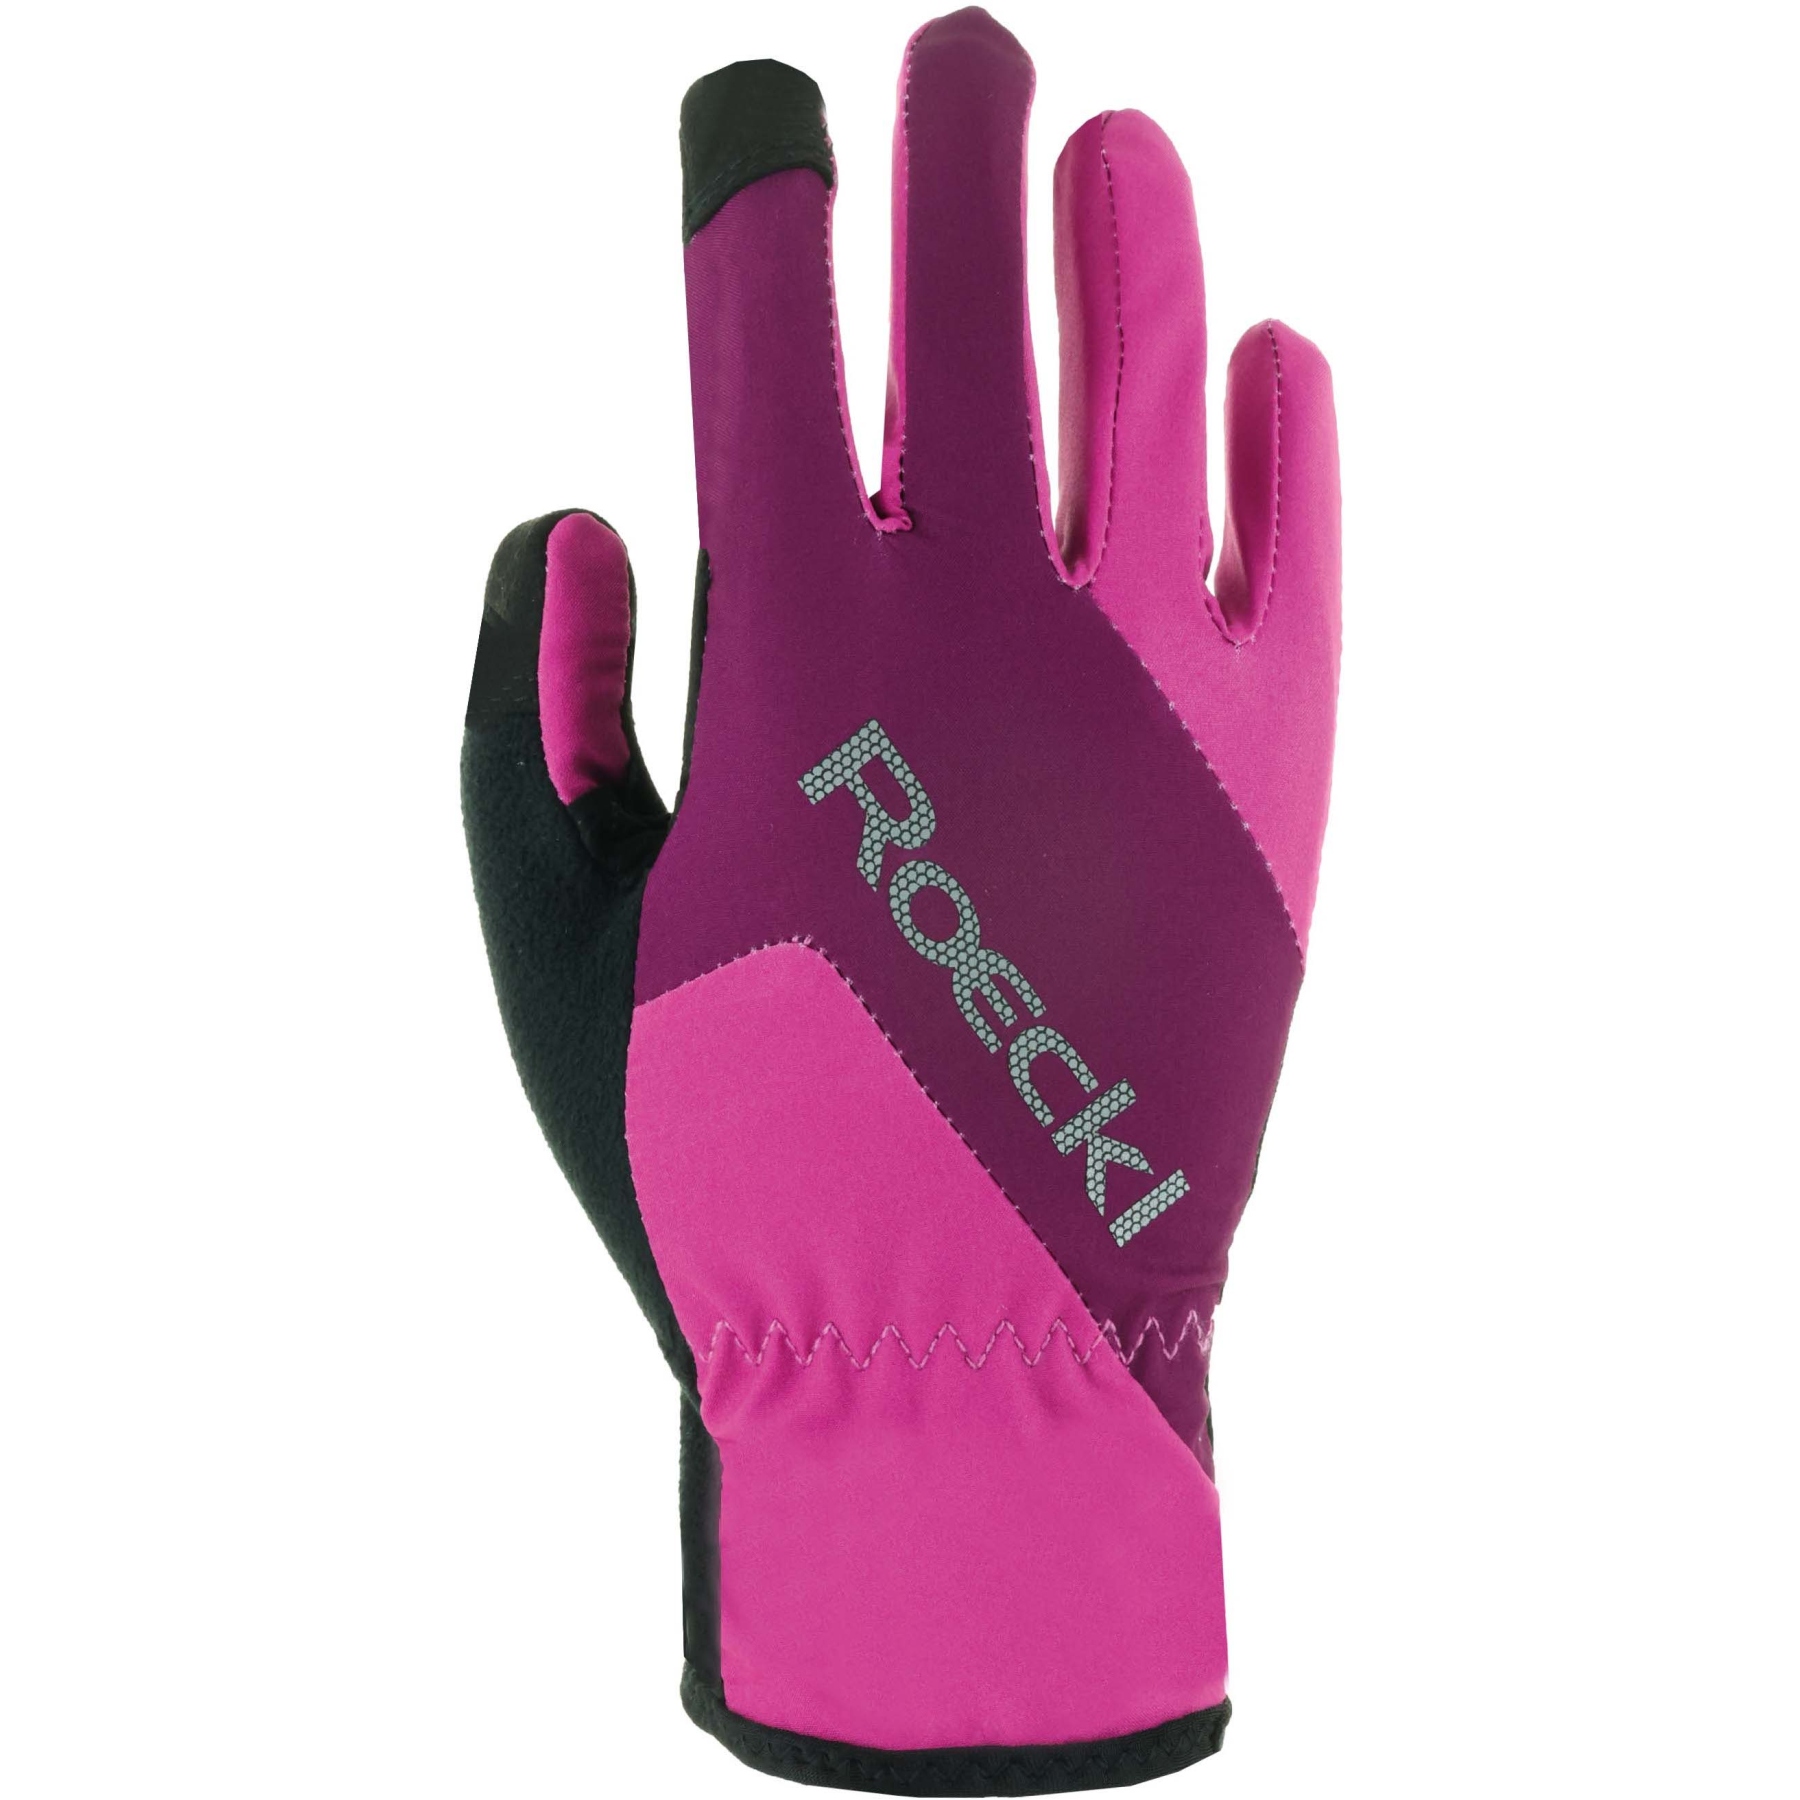 Produktbild von Roeckl Sports Zarasai Kinder Fahrradhandschuhe - rose violet/purple 4690